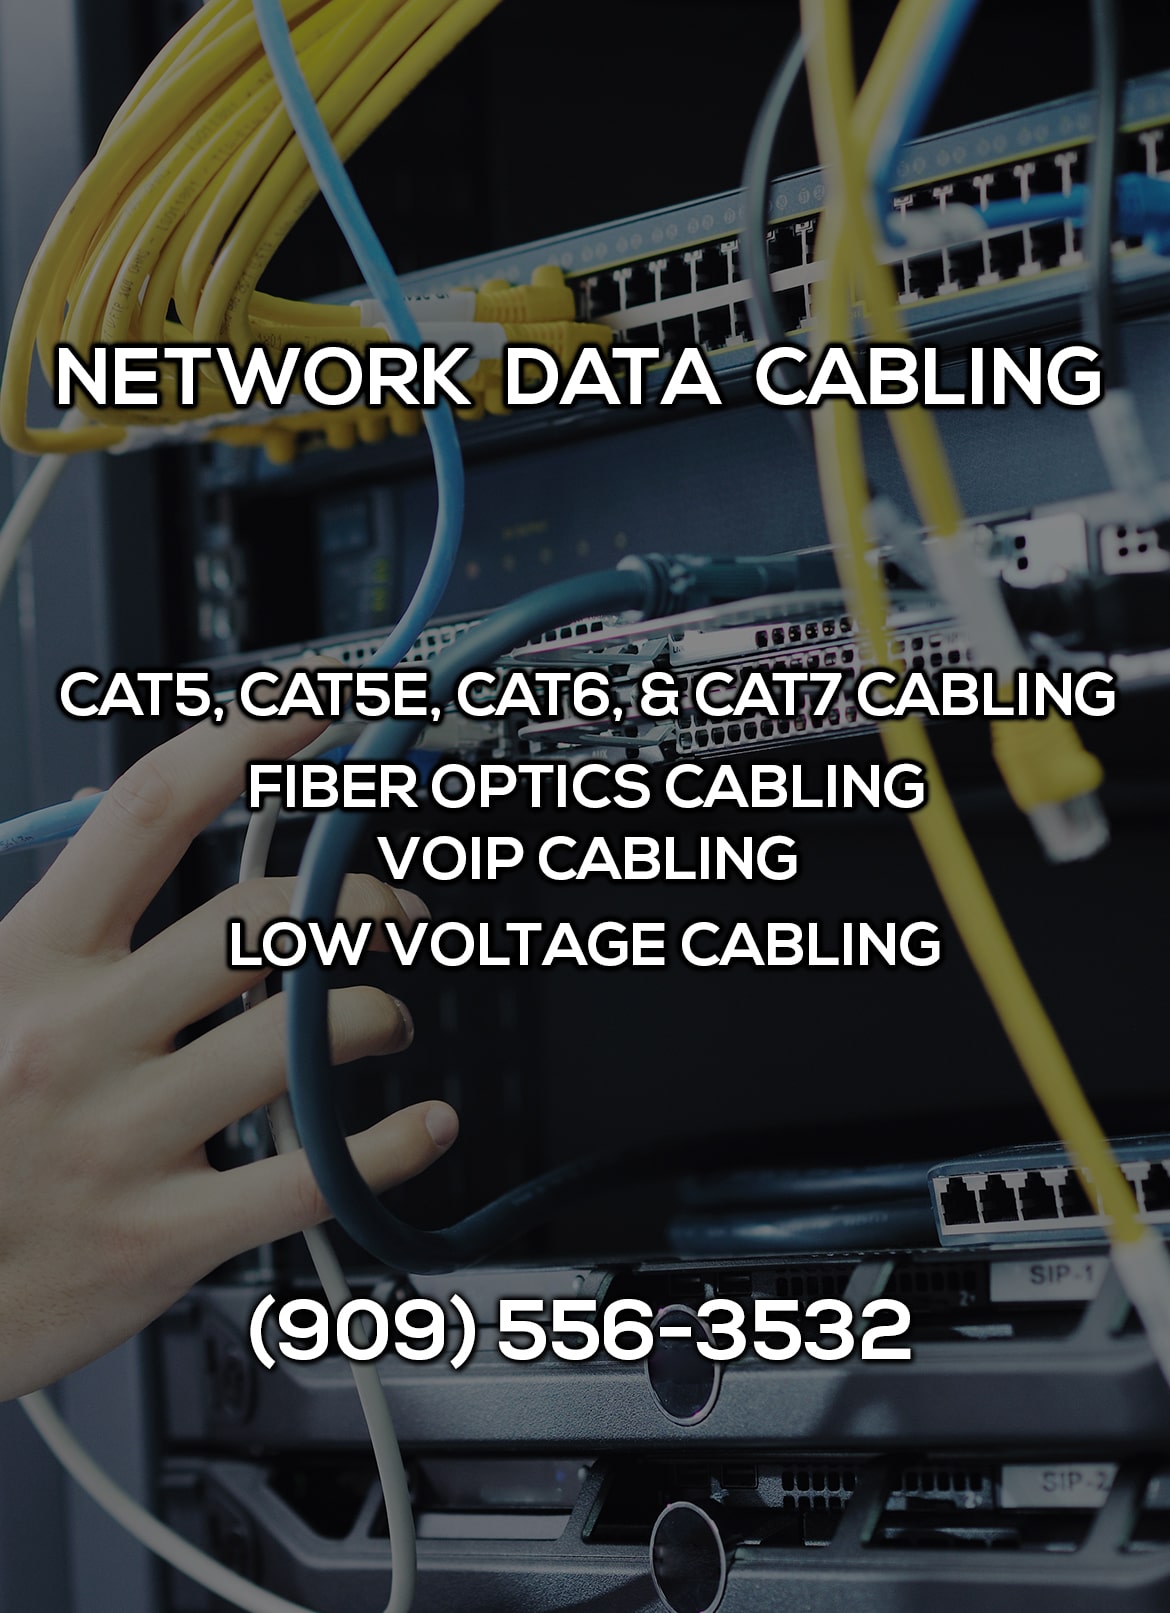 Network Data Cabling in Menifee CA